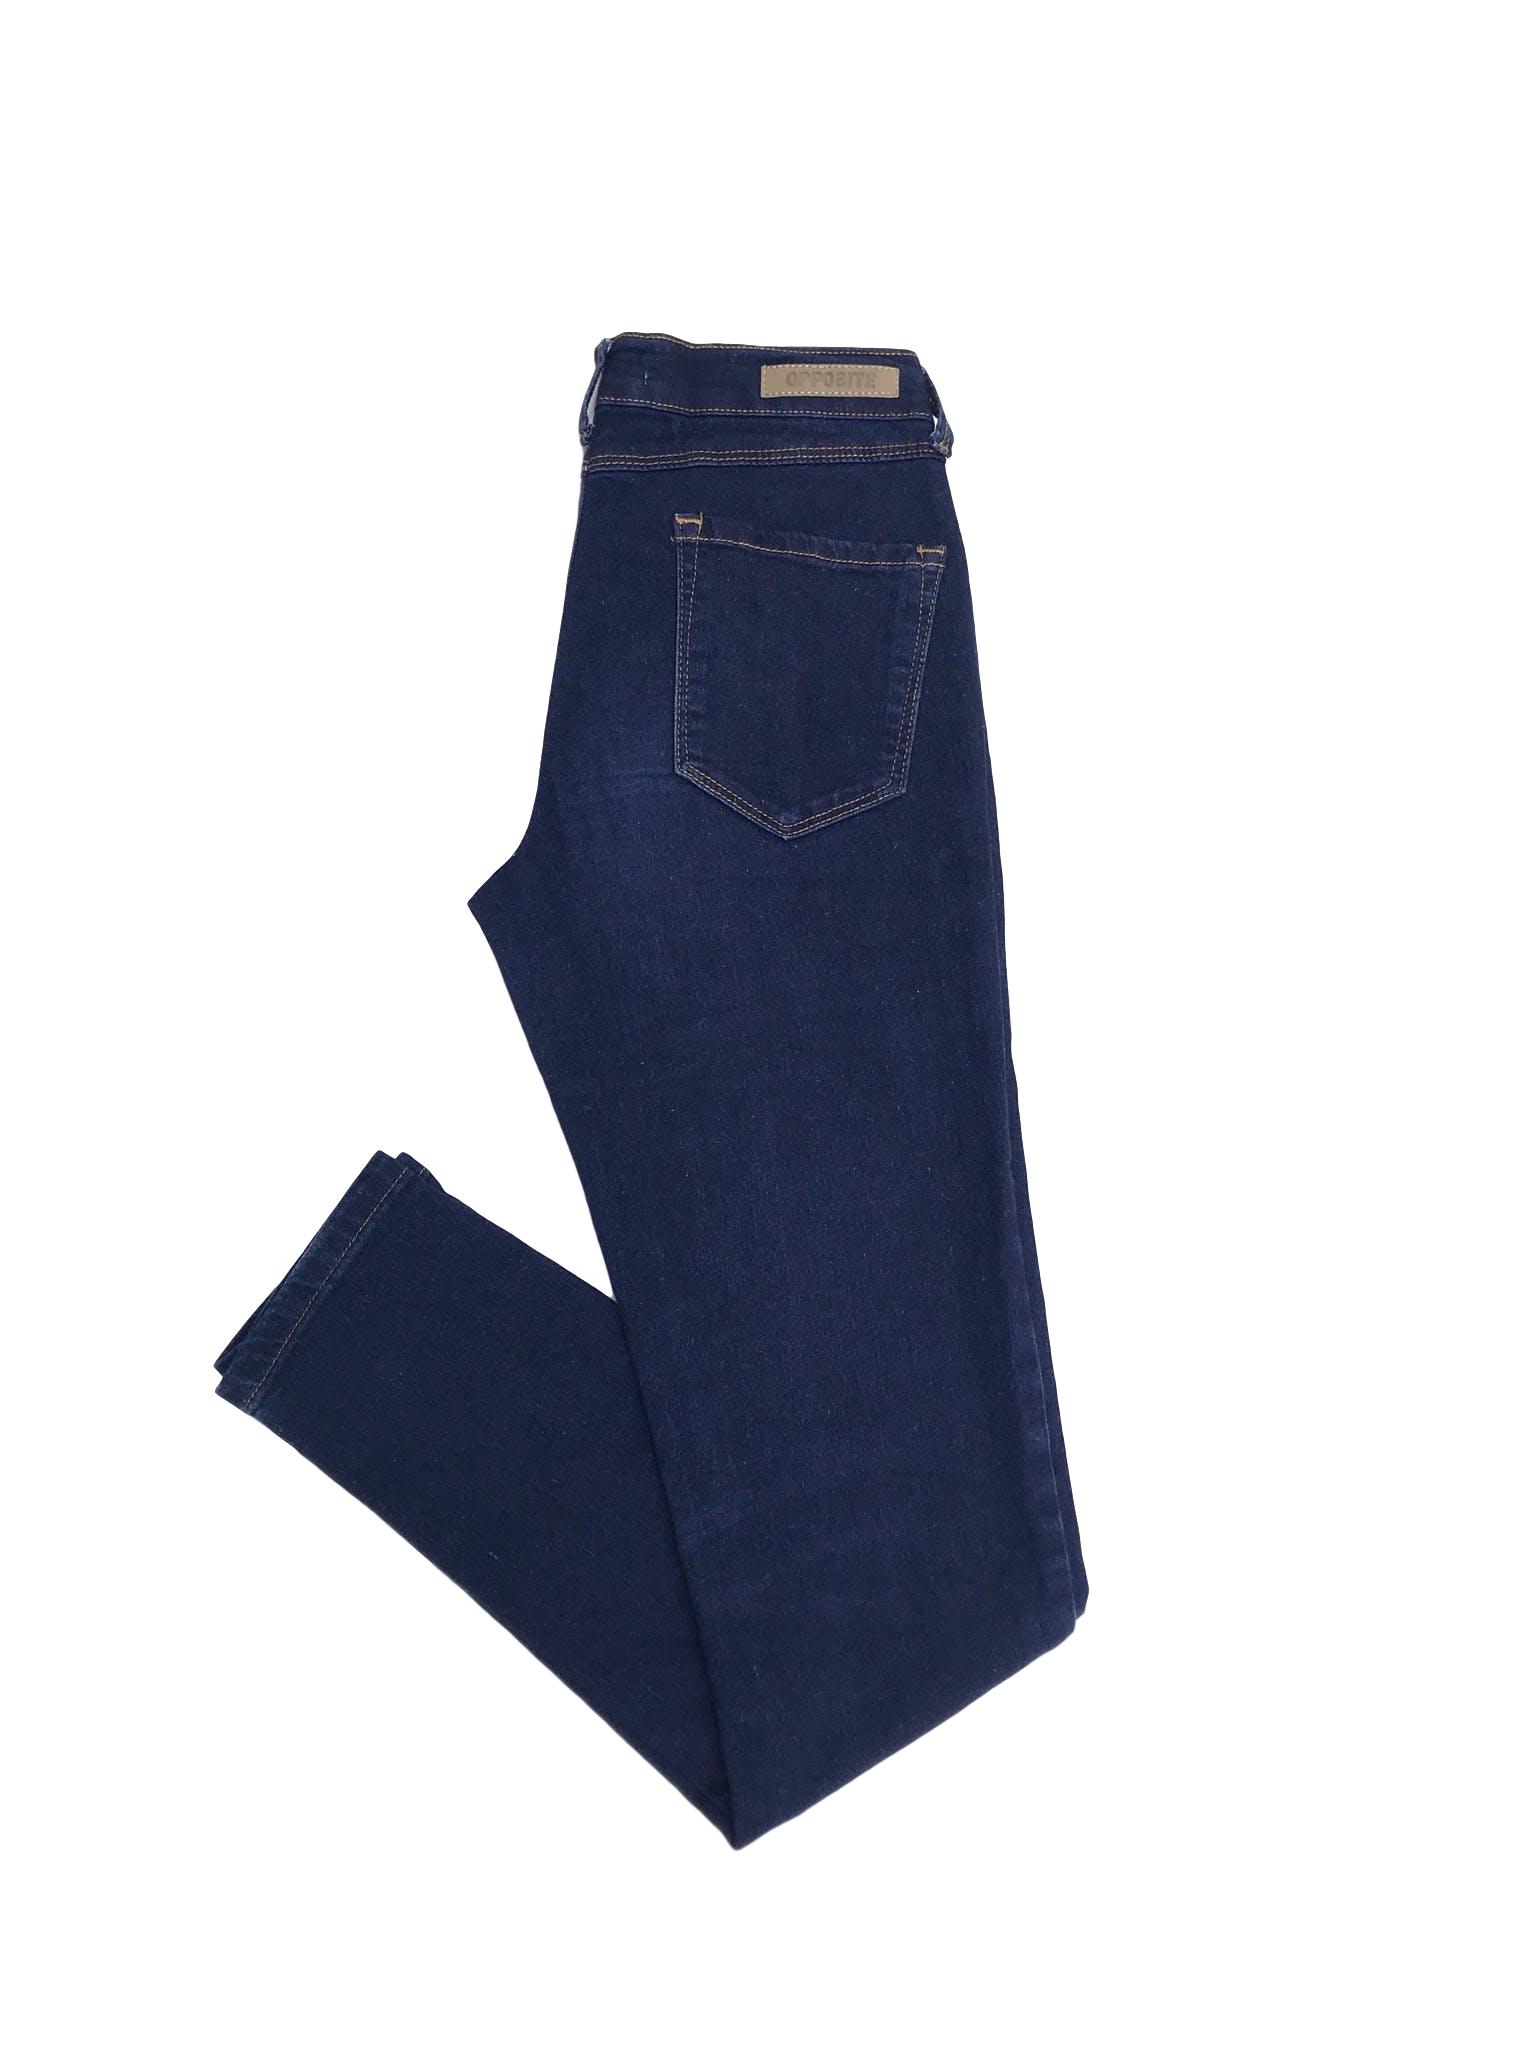 Pantalón jean stretch Opposite, azul, con bolsillos traseros, pespuntes mostaza, corte pitillo
Talla 26